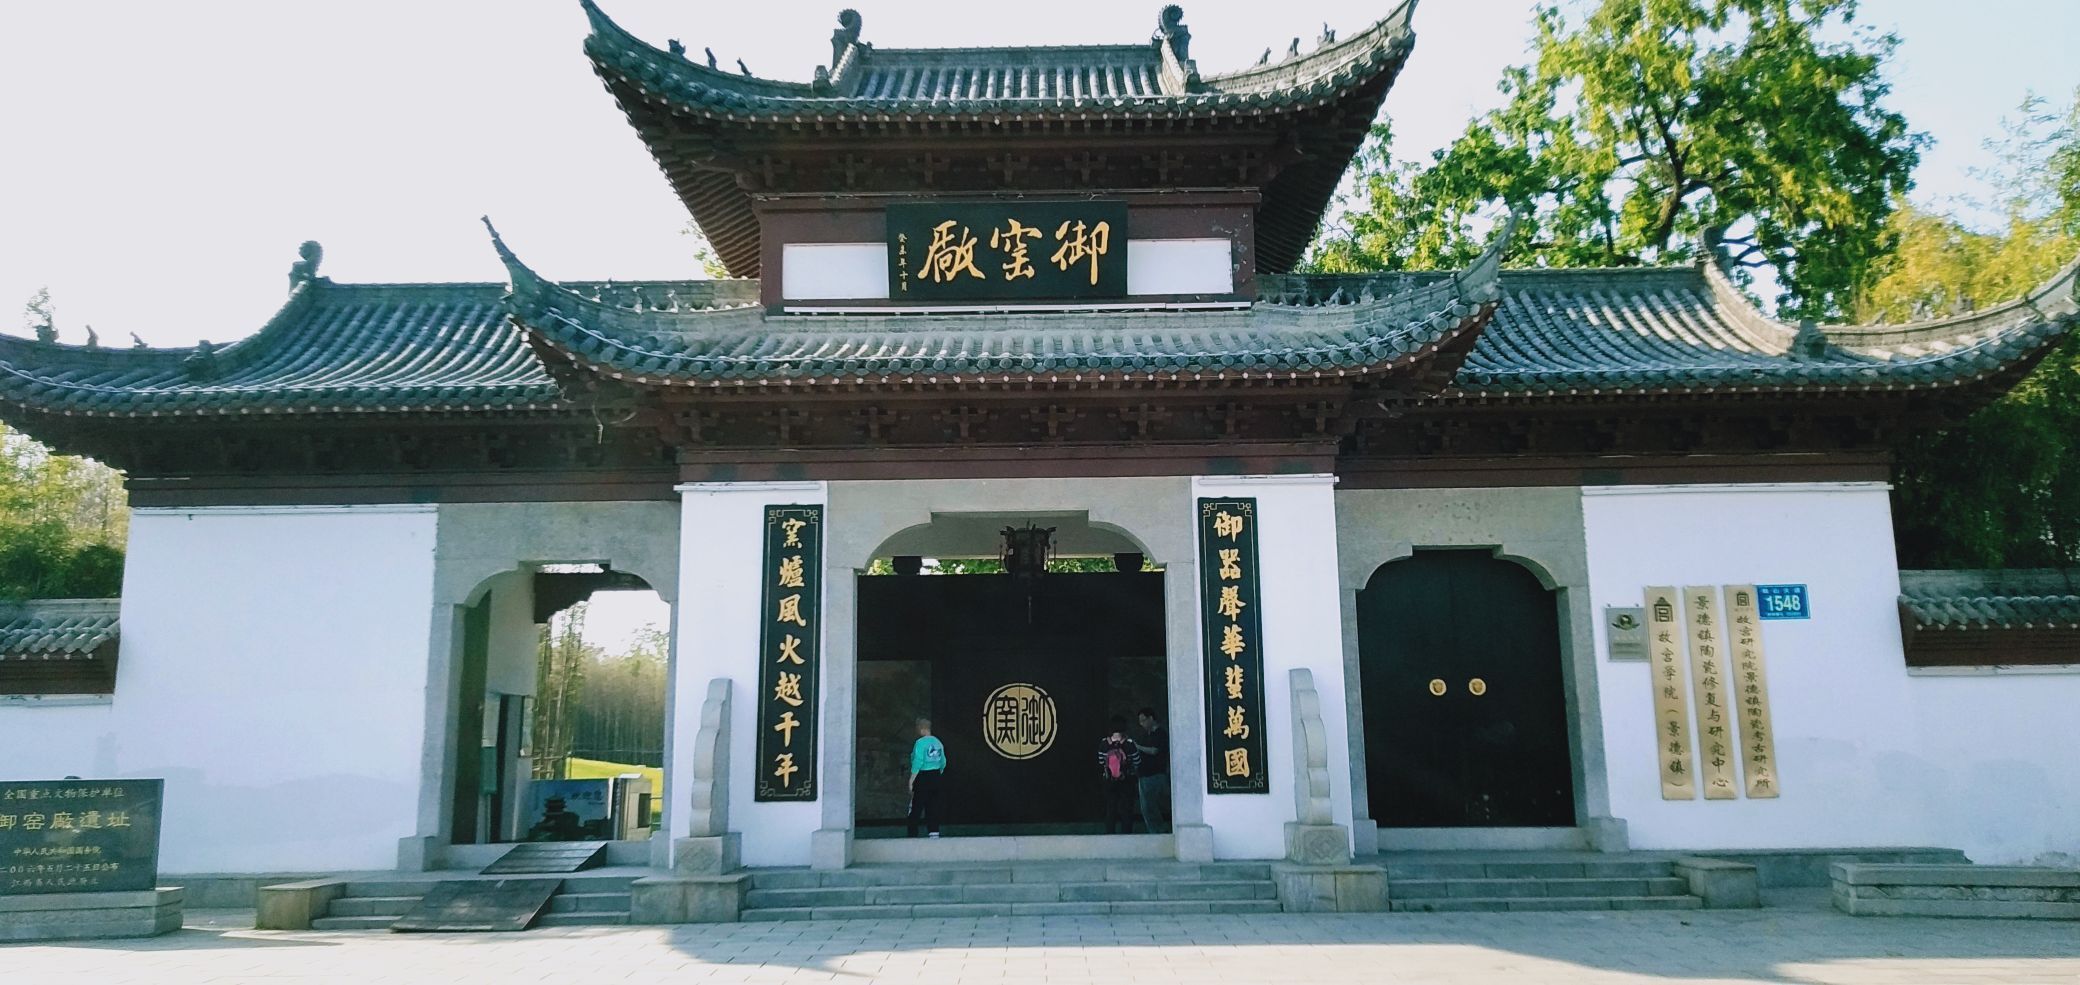 景德镇御窑厂国家考古遗址公园位于江西景德镇珠山区珠山中路187号